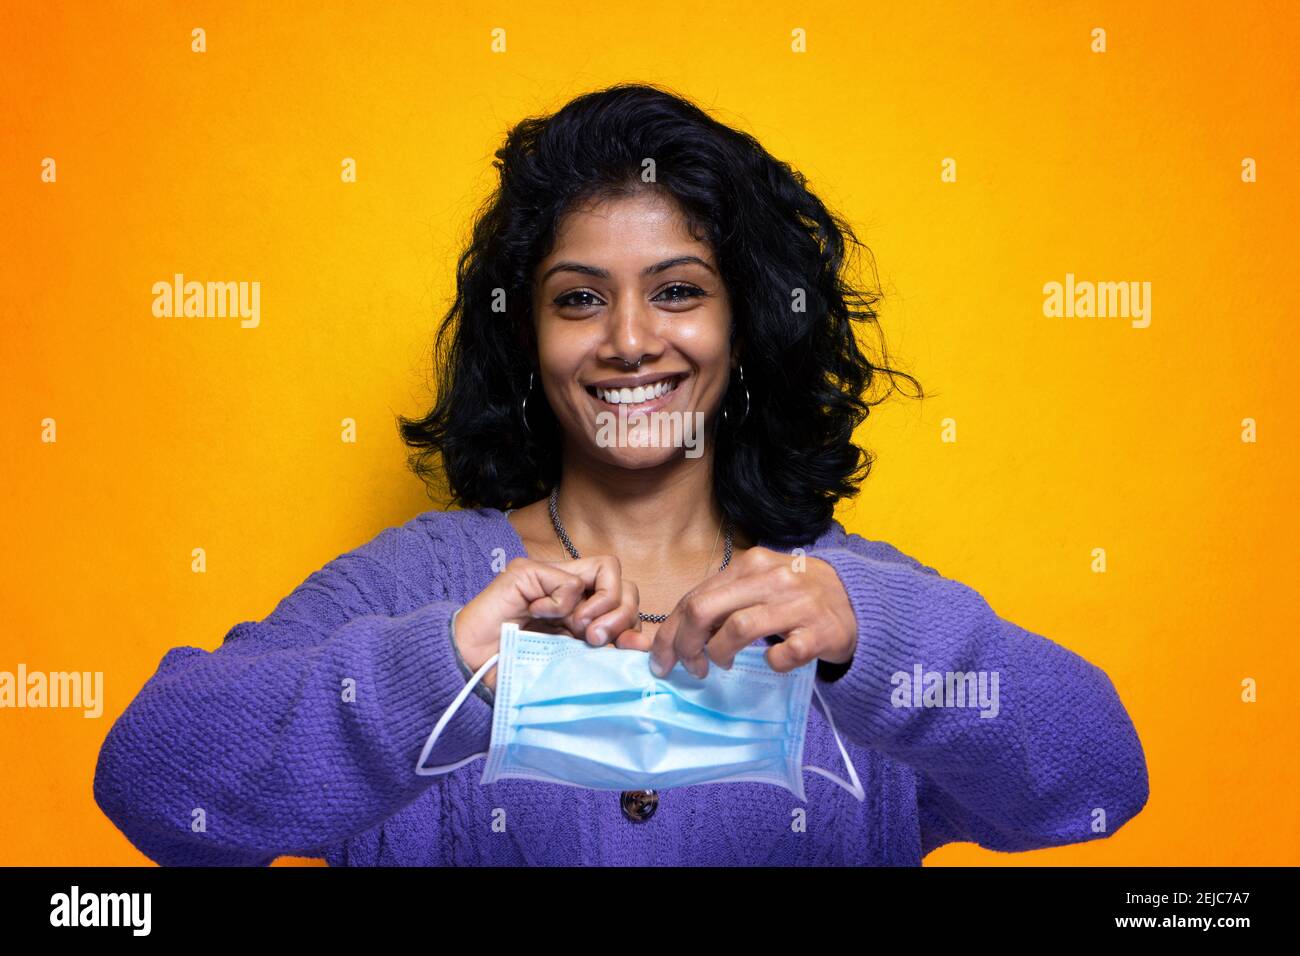 Belle jeune femme indienne se déchire sa protection de masque Covid 19 - jolie fille Sri Lanka heureuse pour la fin de la grippe pandémique fait remonter le masque du virus Banque D'Images